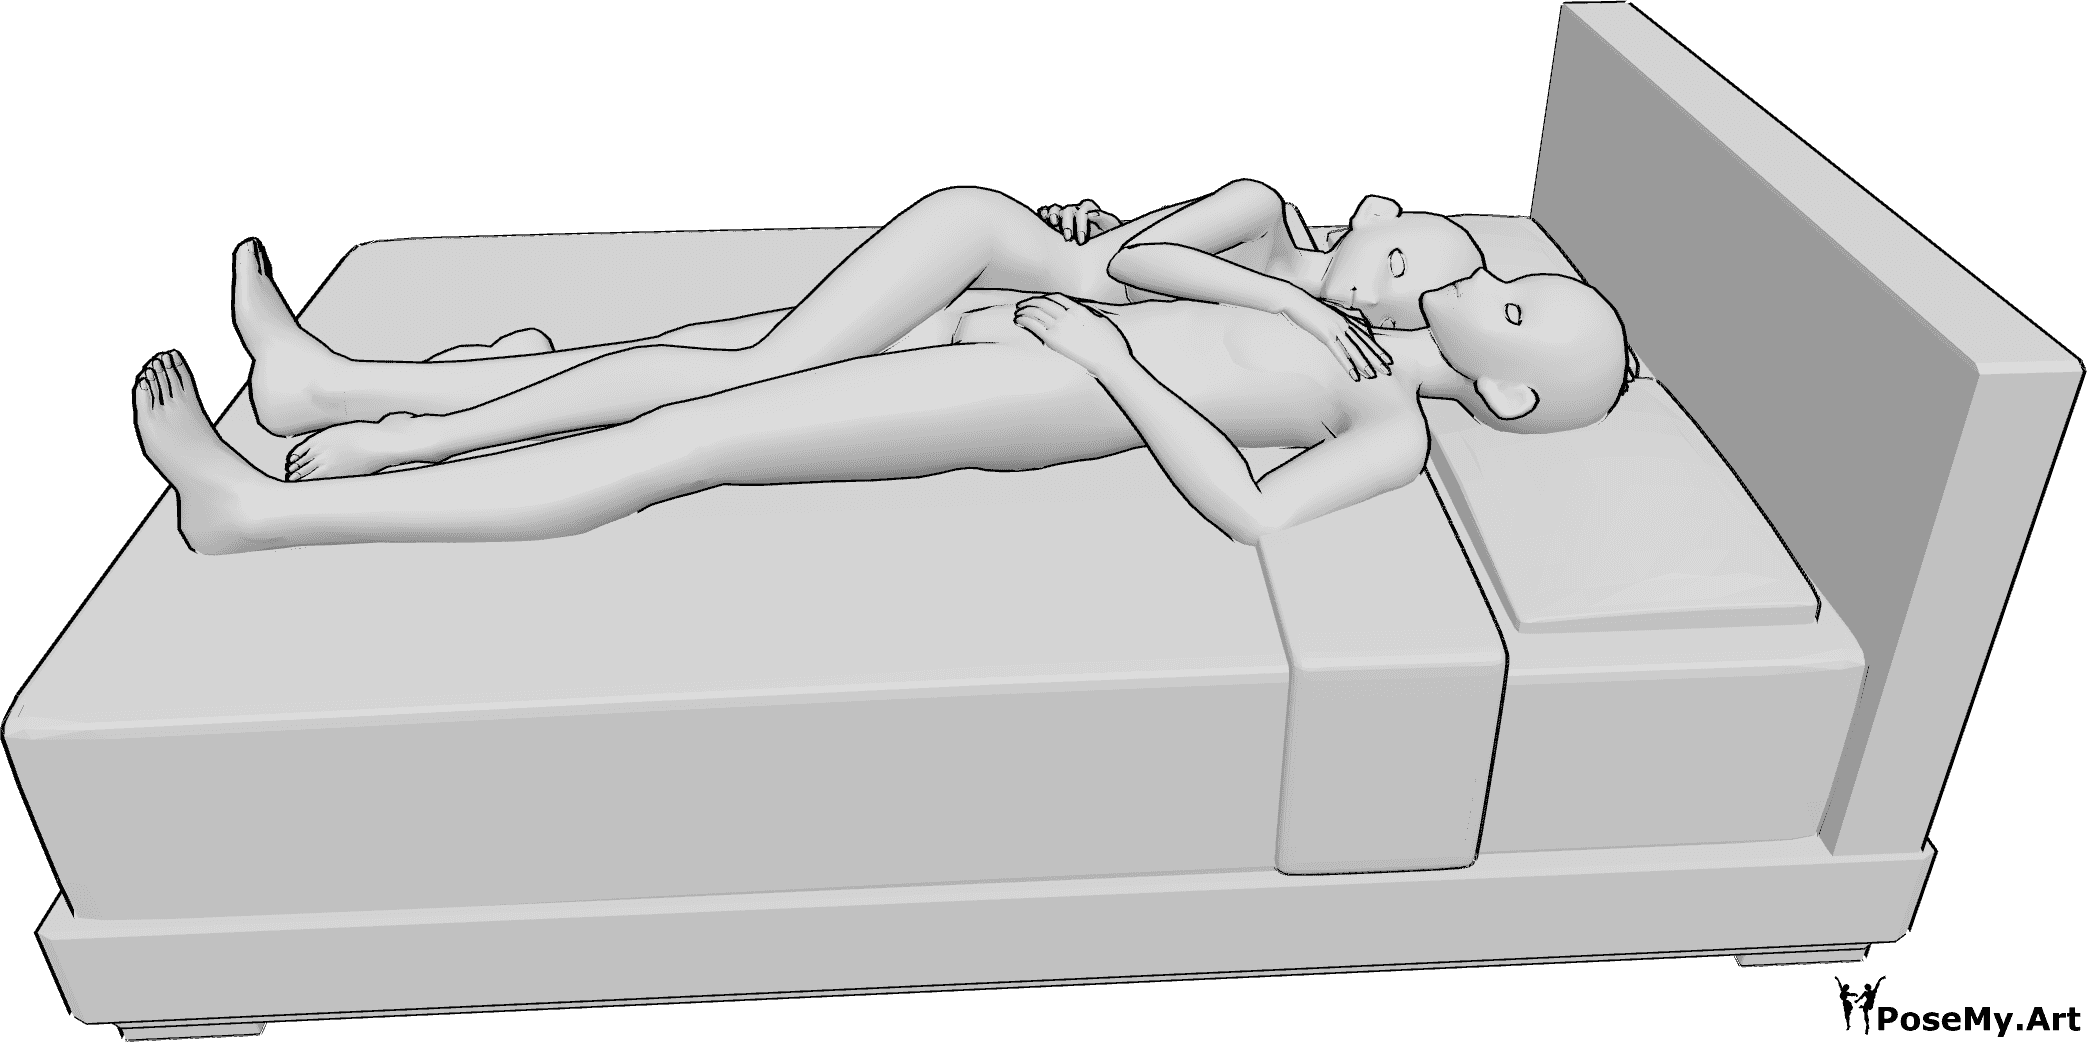 Posen-Referenz- Anime umarmt schlafen Pose - Anime weiblich und männlich Paar schläft zusammen, umarmen einander